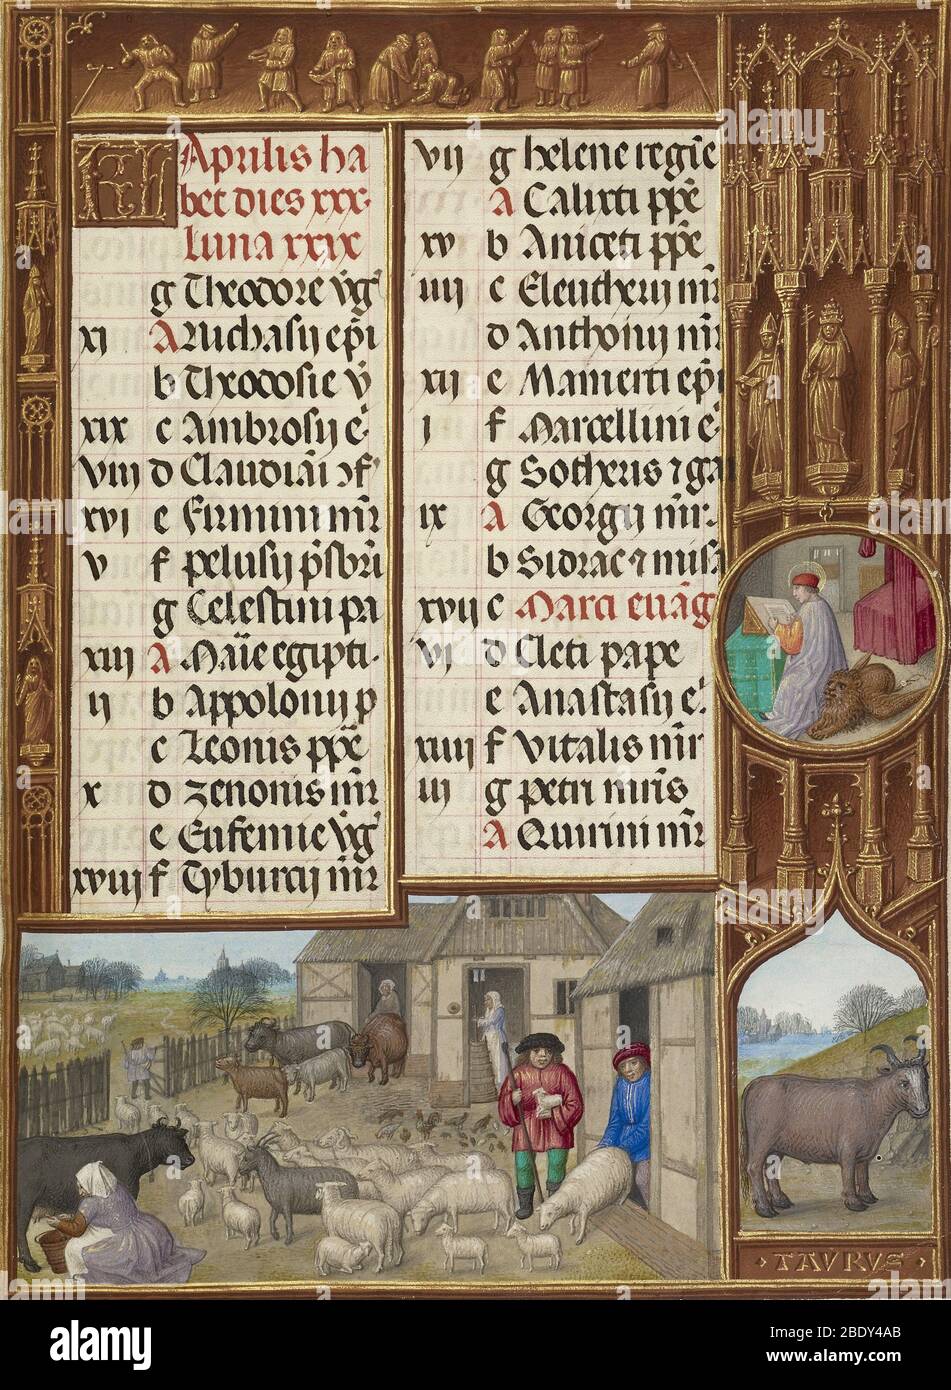 Libro medievale dei giorni, segno del Toro Foto Stock